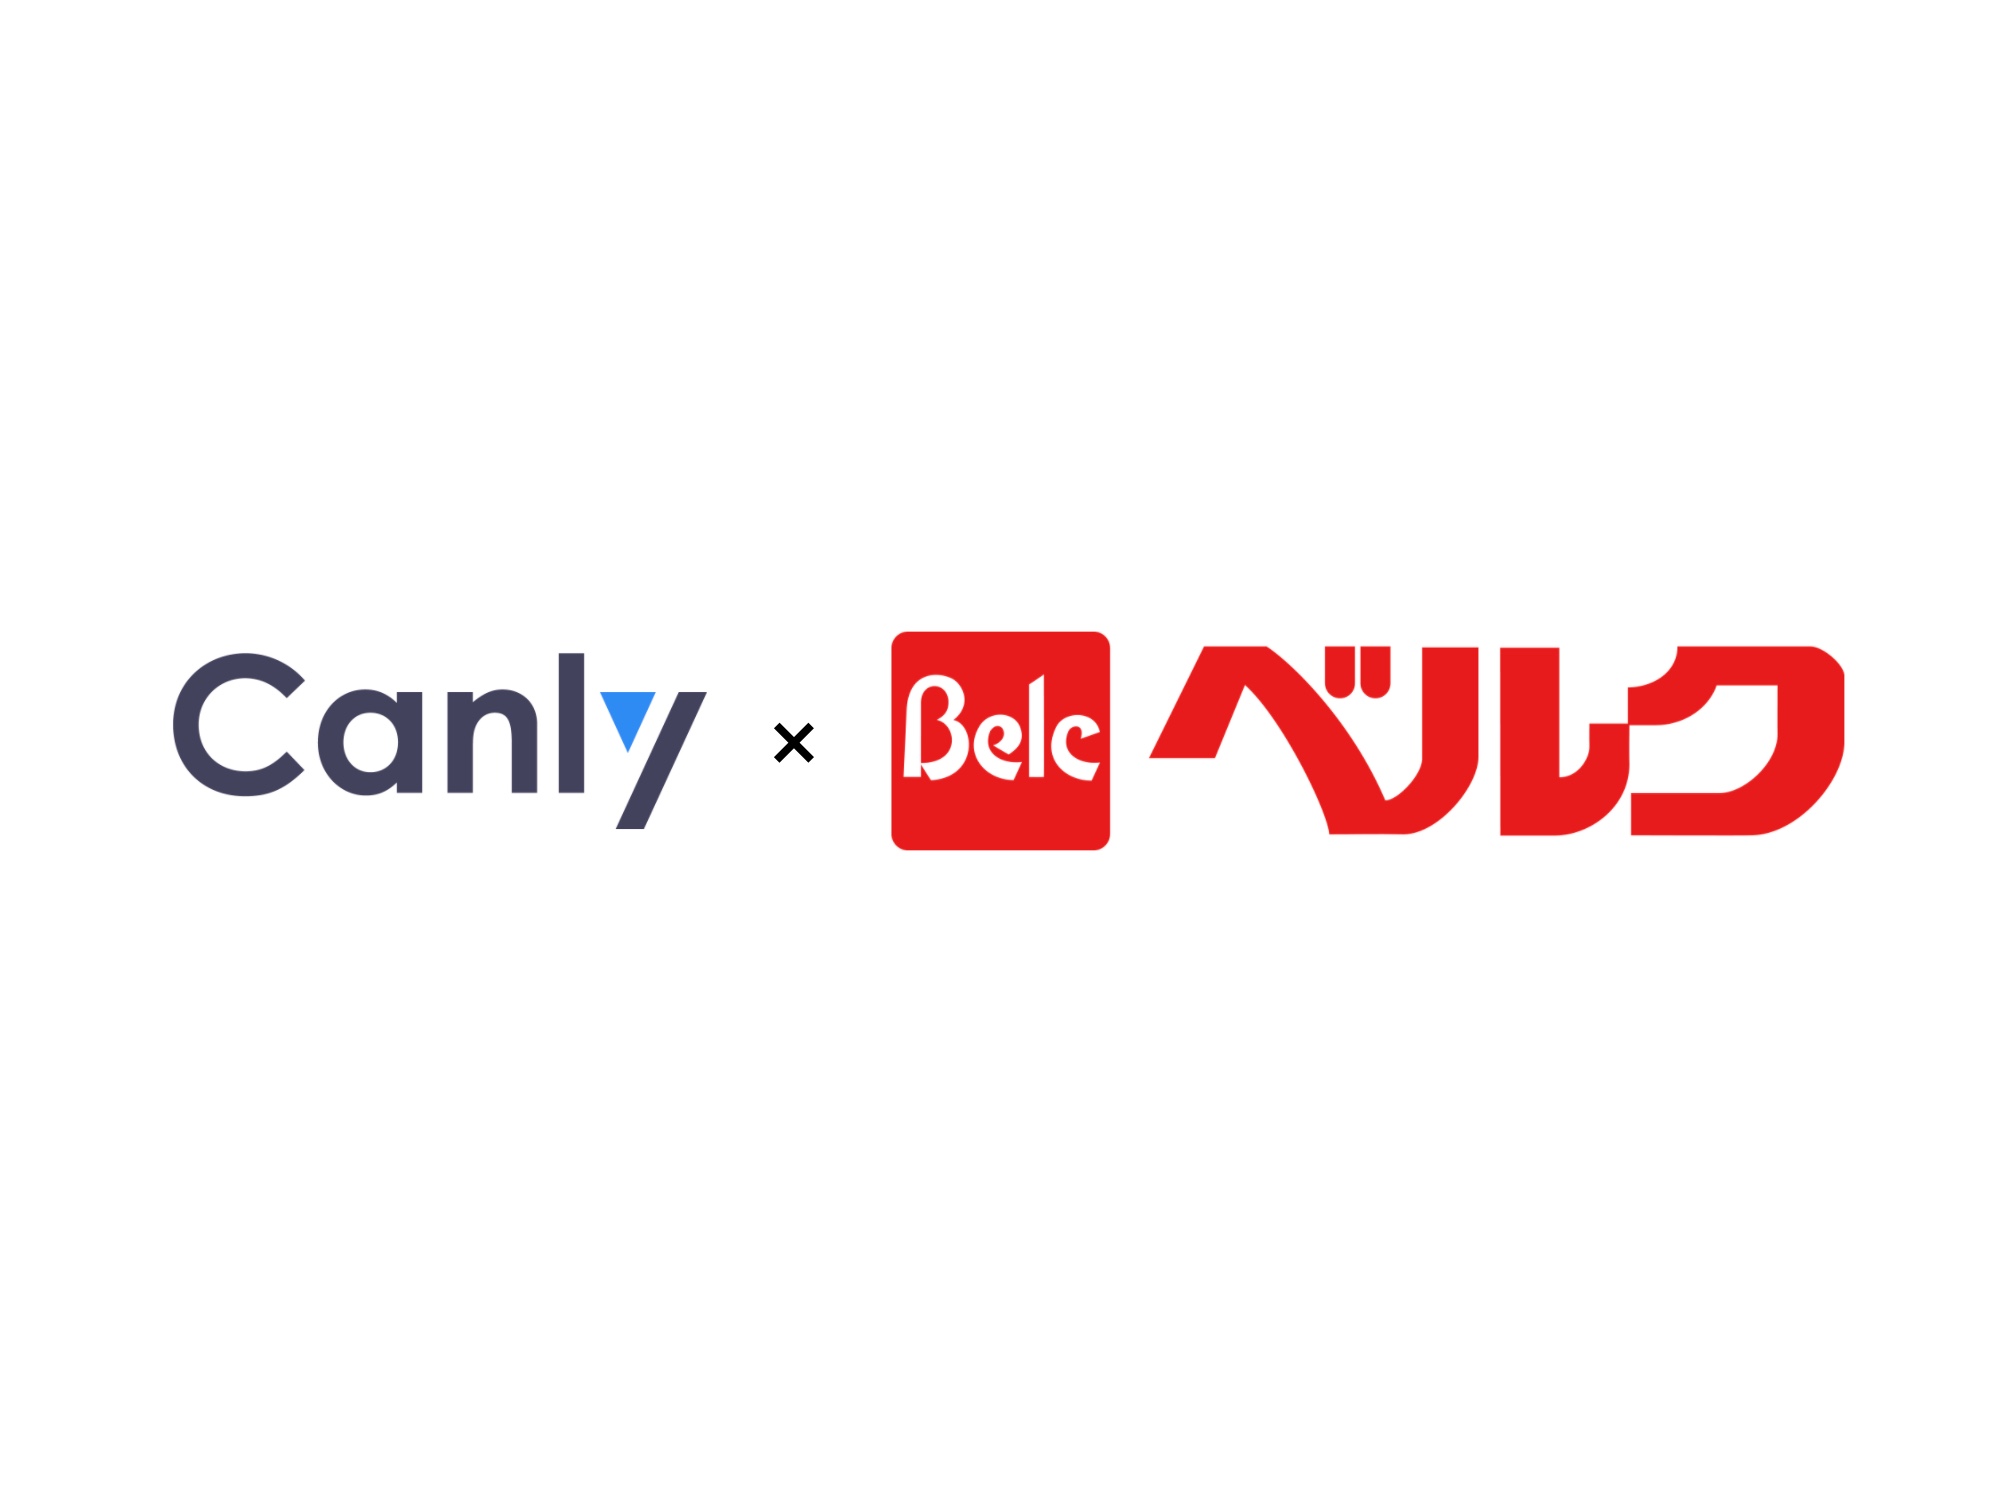 【スーパー業界必見】東証1部上場企業の大手スーパーマーケットチェーンベルクが、Googleマイビジネスの一括管理を可能とするCanly(カンリー)の導入を決定